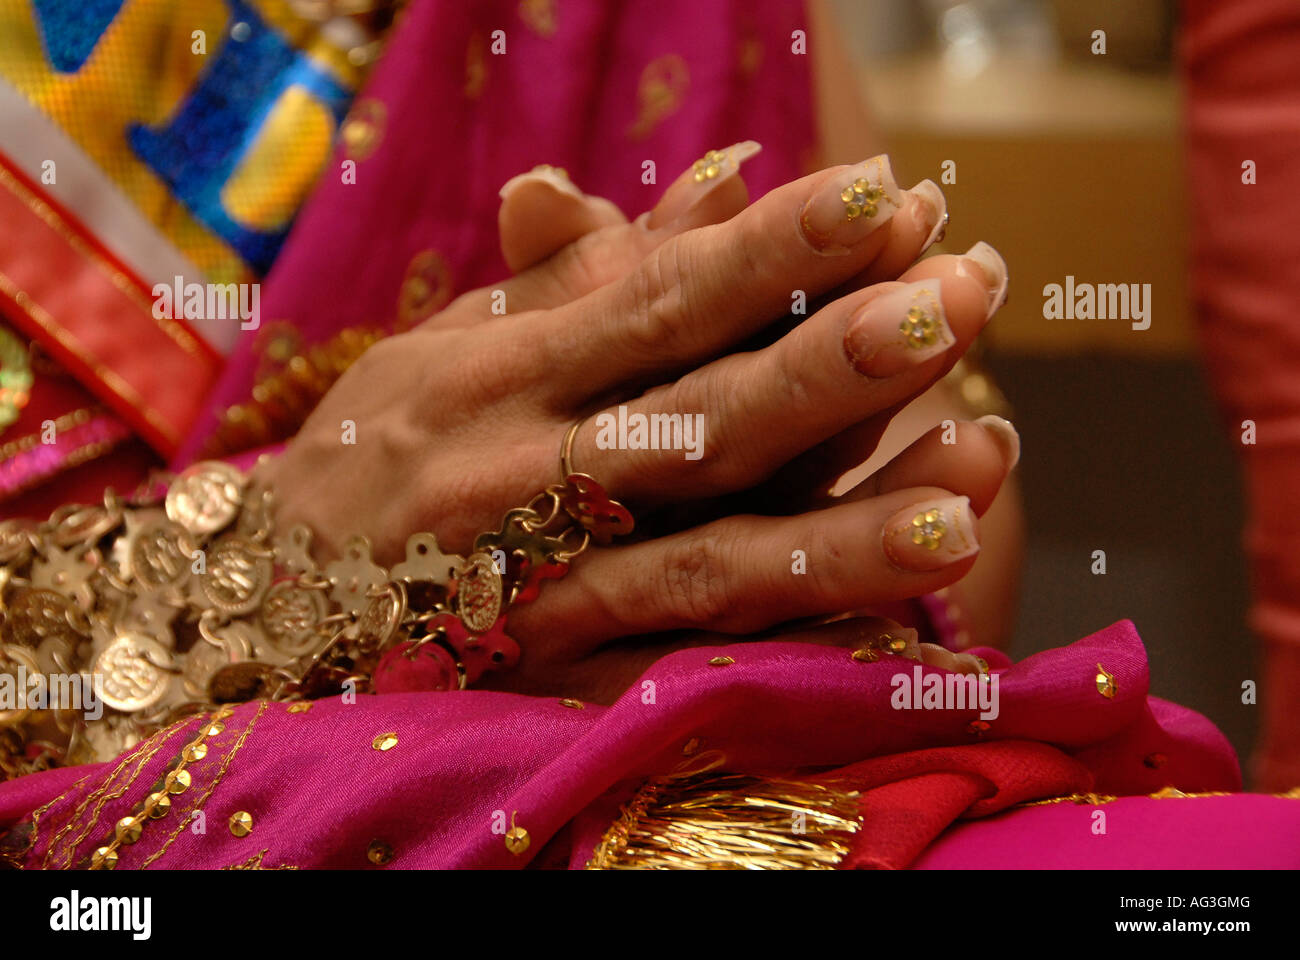 Les mains d'un membre de l'Hijra transgenre ornée de bijoux doré traditionnel et ongles autocollants, Inde Banque D'Images